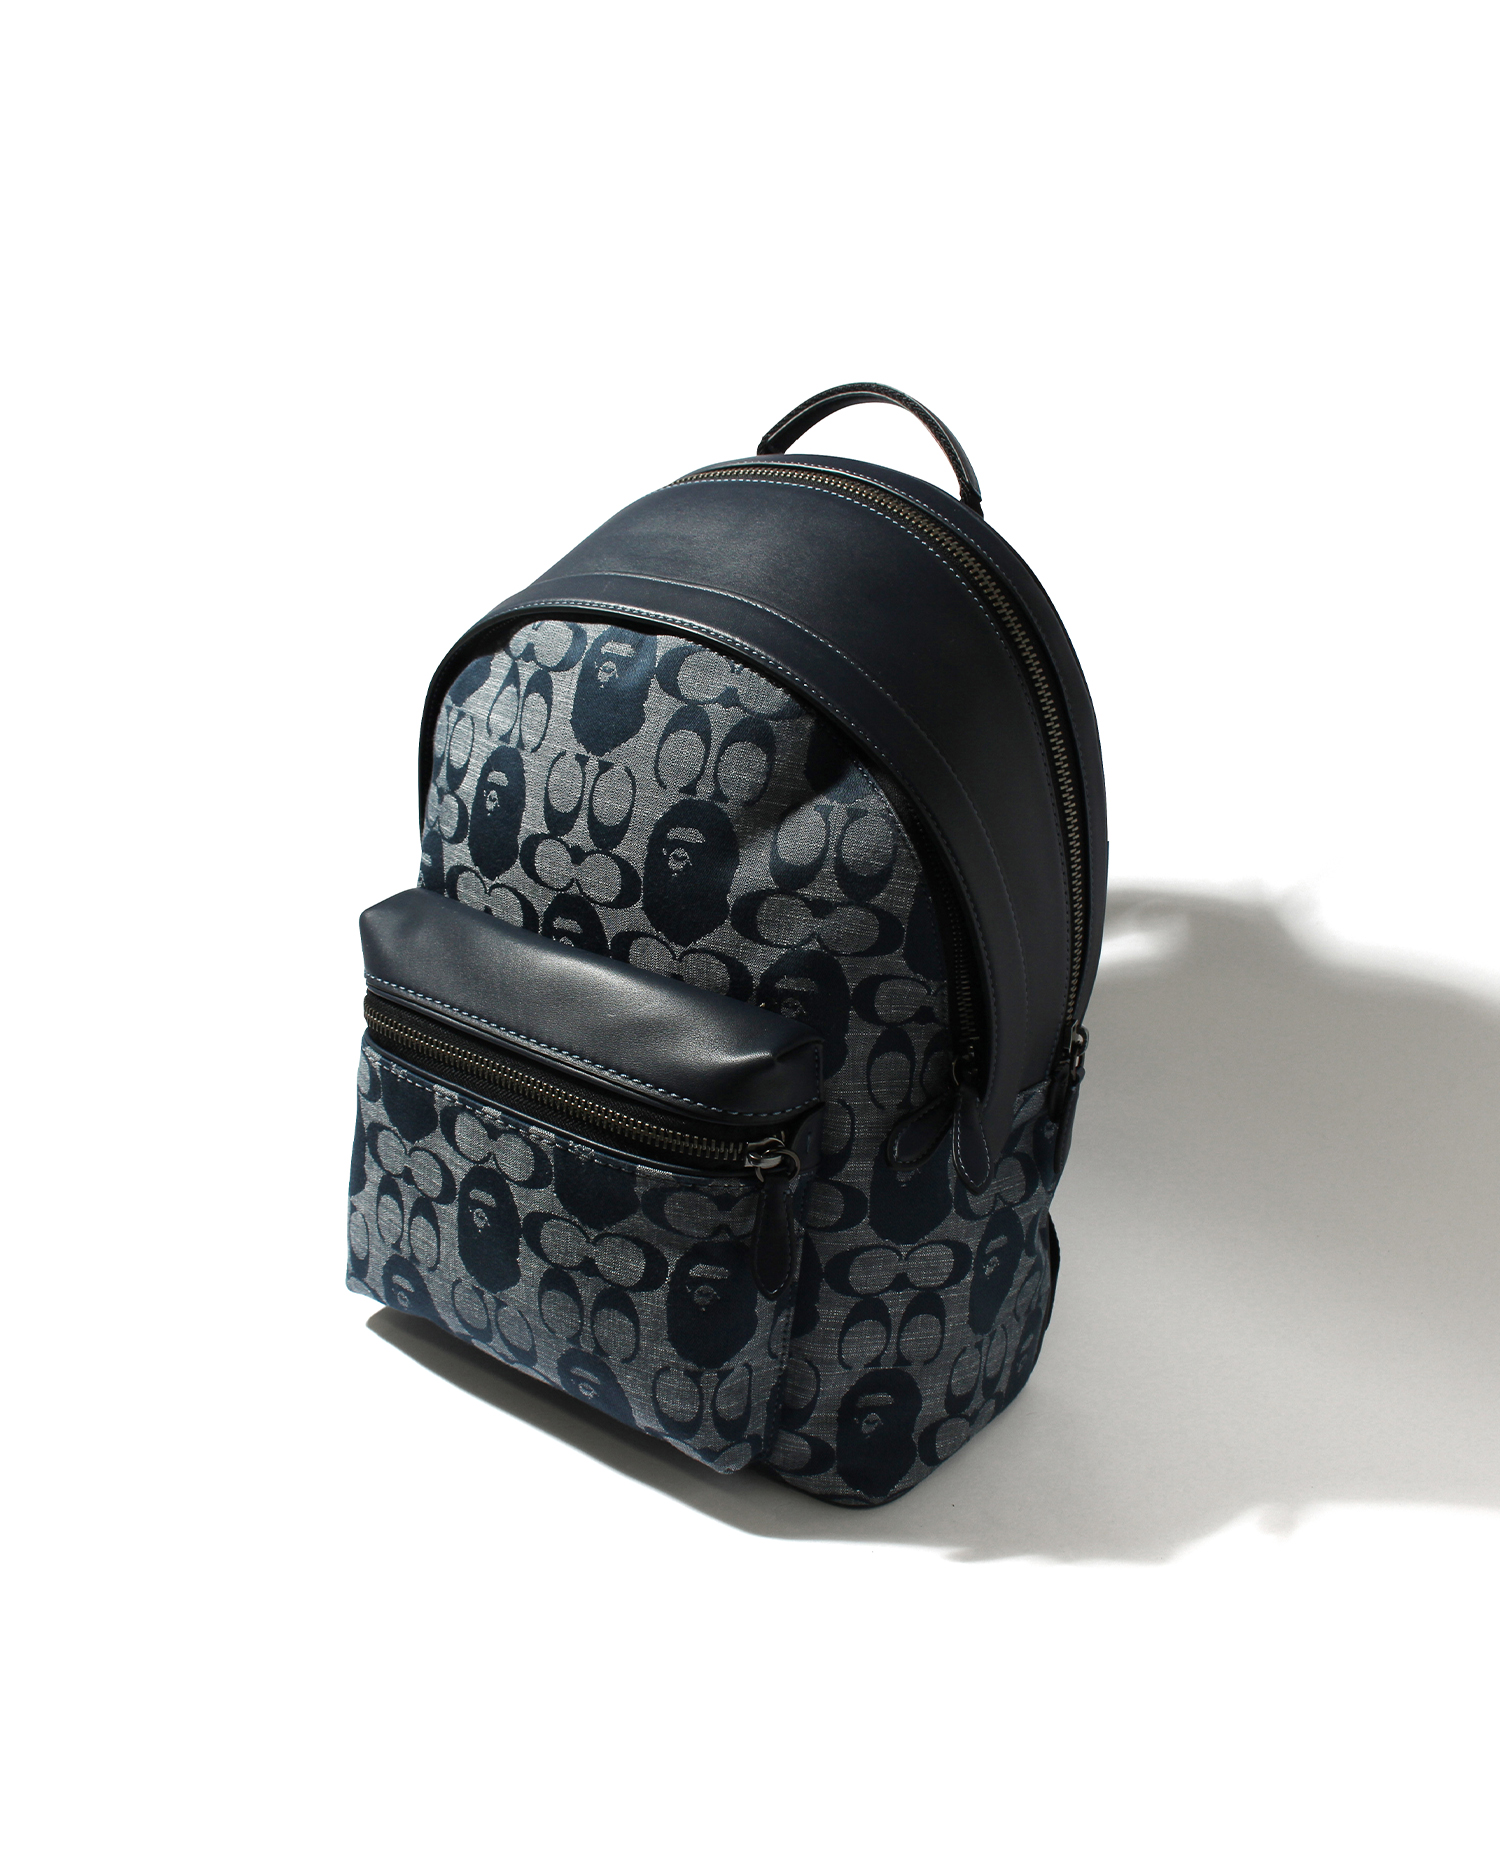 BAPE×COACH backpack